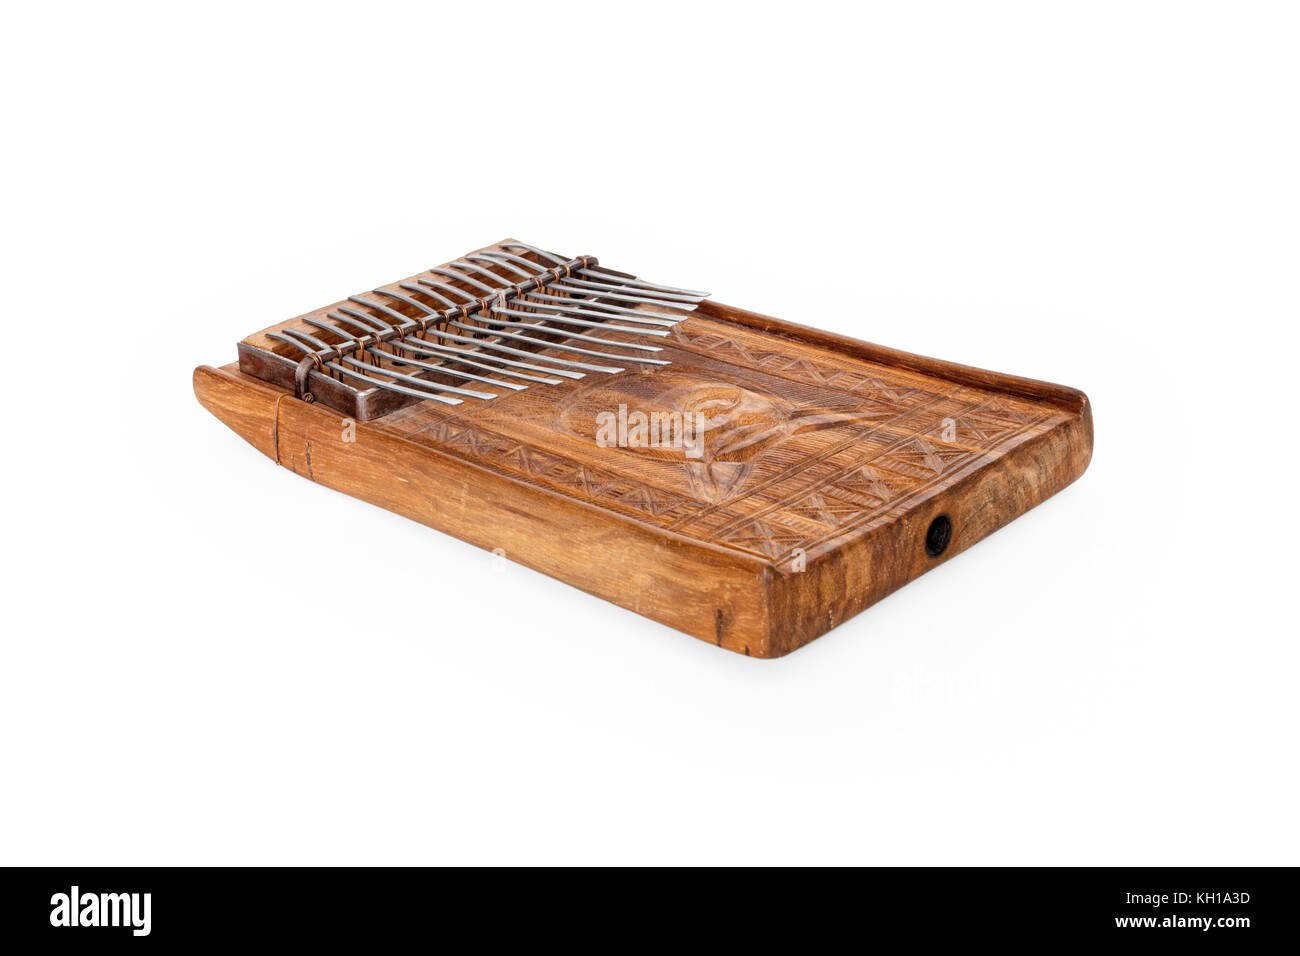 Mbira africana tradicional, un instrumento musical consistente en una caja de resonancia de madera y metal, de Zimbabwe claves frentes Foto de stock